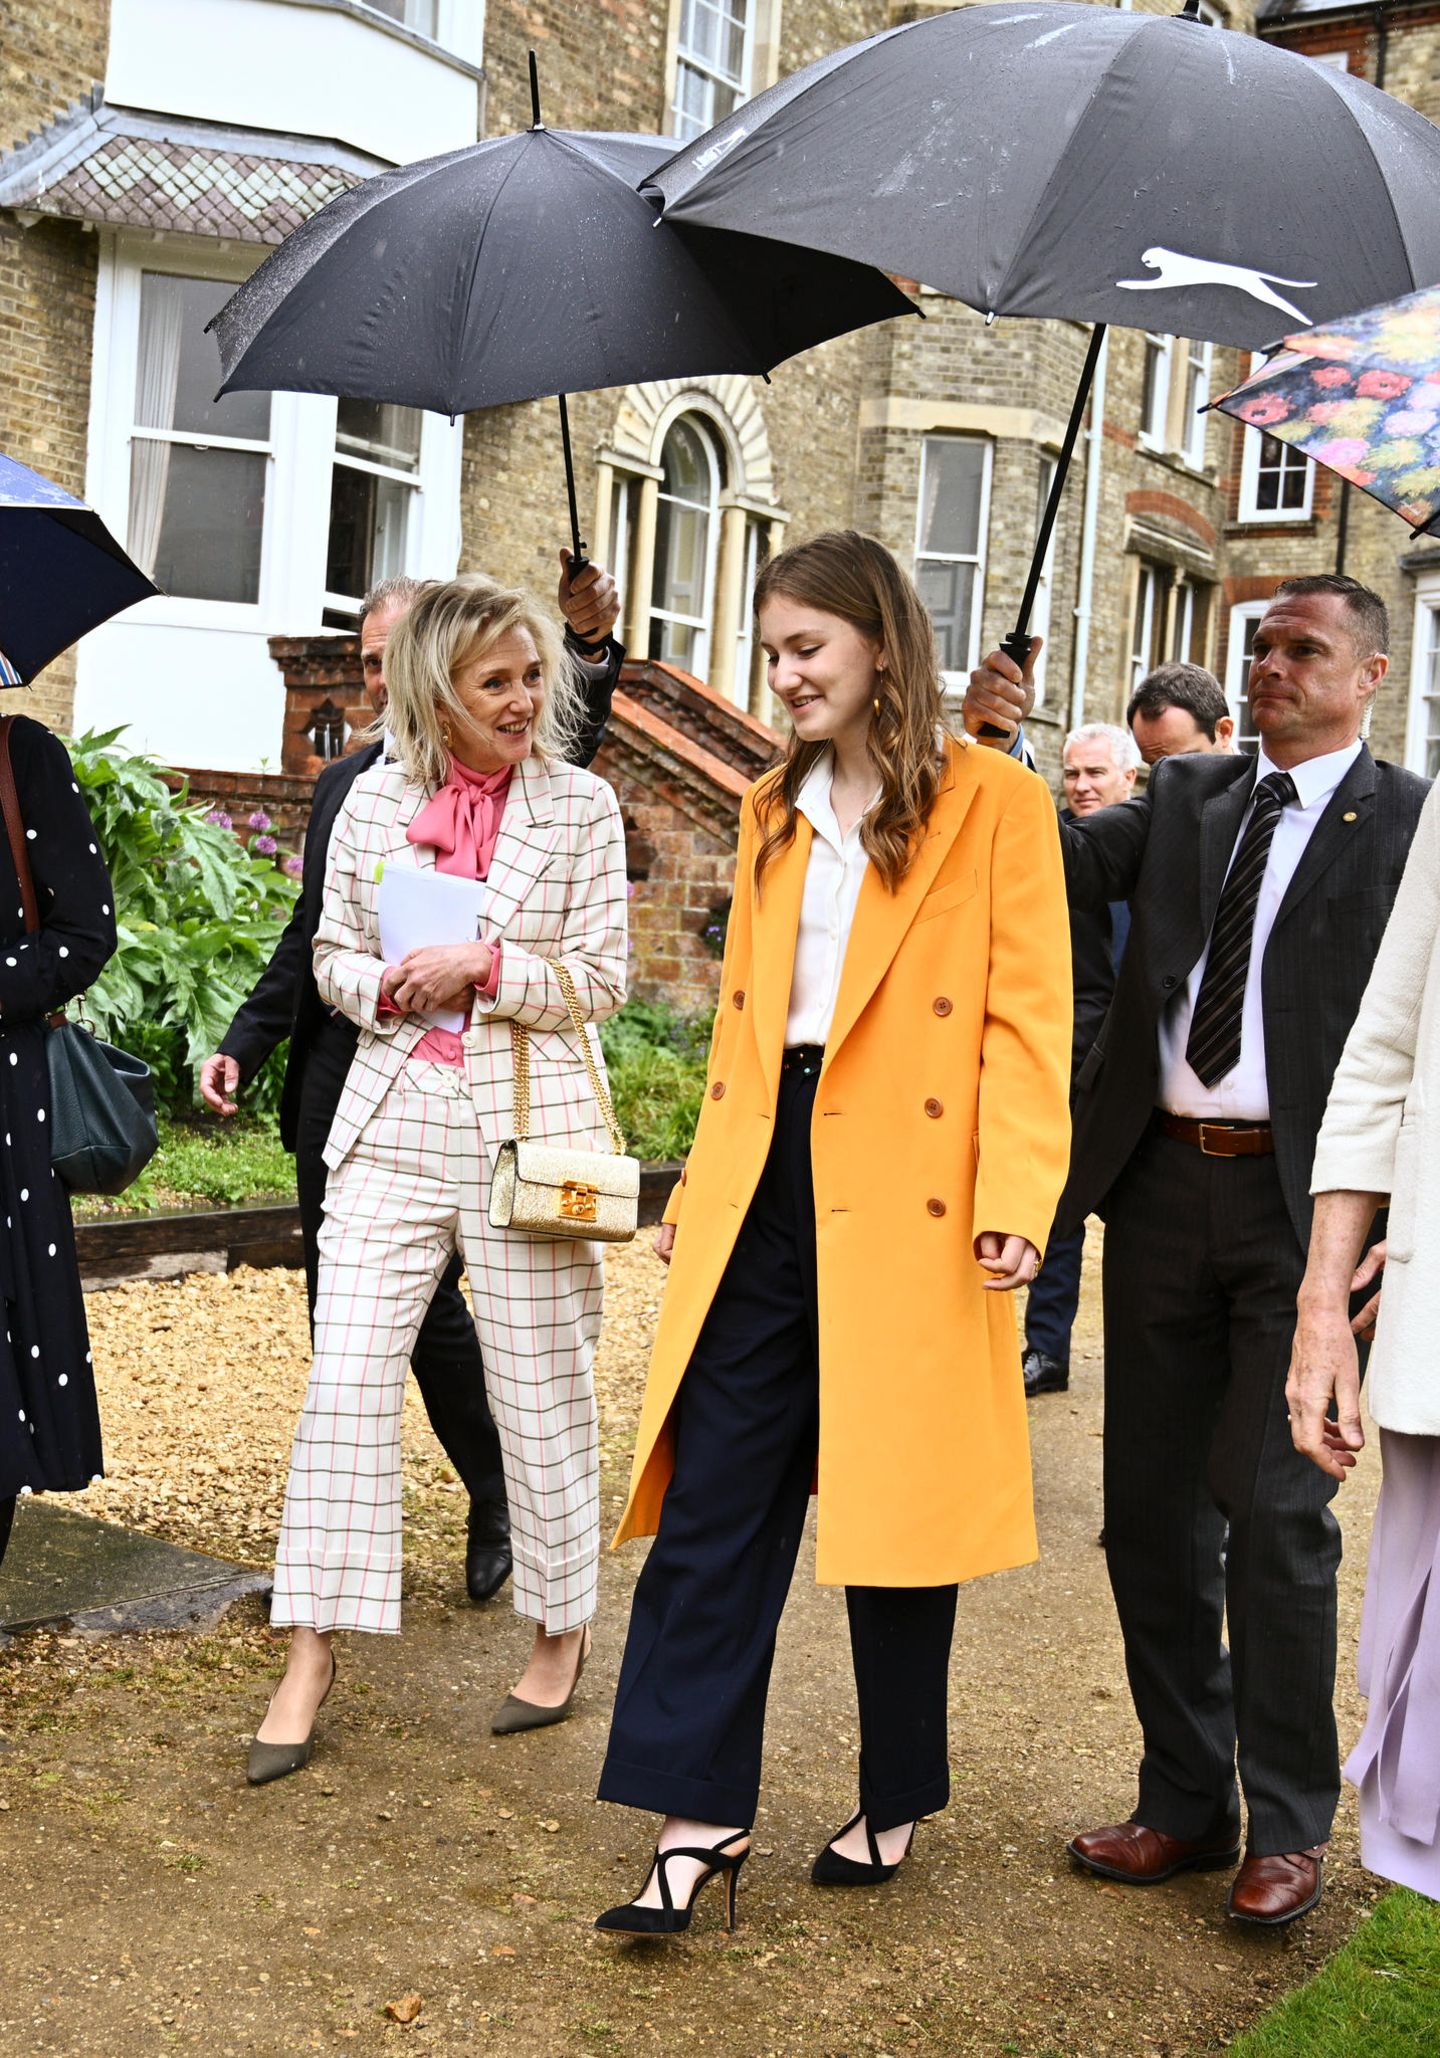 Im Rahmen der Wirtschaftsmission in Grossbritannien stattet Prinzessin Astrid ihrer Nichte Prinzessin Elisabeth einen Besuch an der Elite Universität in Oxford ab und bekommt selbstverständlich eine persönliche Führung. Trotz des englischen Regenwetter strahlt die 20-Jährige mit einem knalligen orangefarbenen Mantel. Auch ihre Tante Astrid entscheidet sich für einen frühlingshaften Look und kombiniert zu ihrem karierten Hosenanzug eine pinke Schluppenbluse.